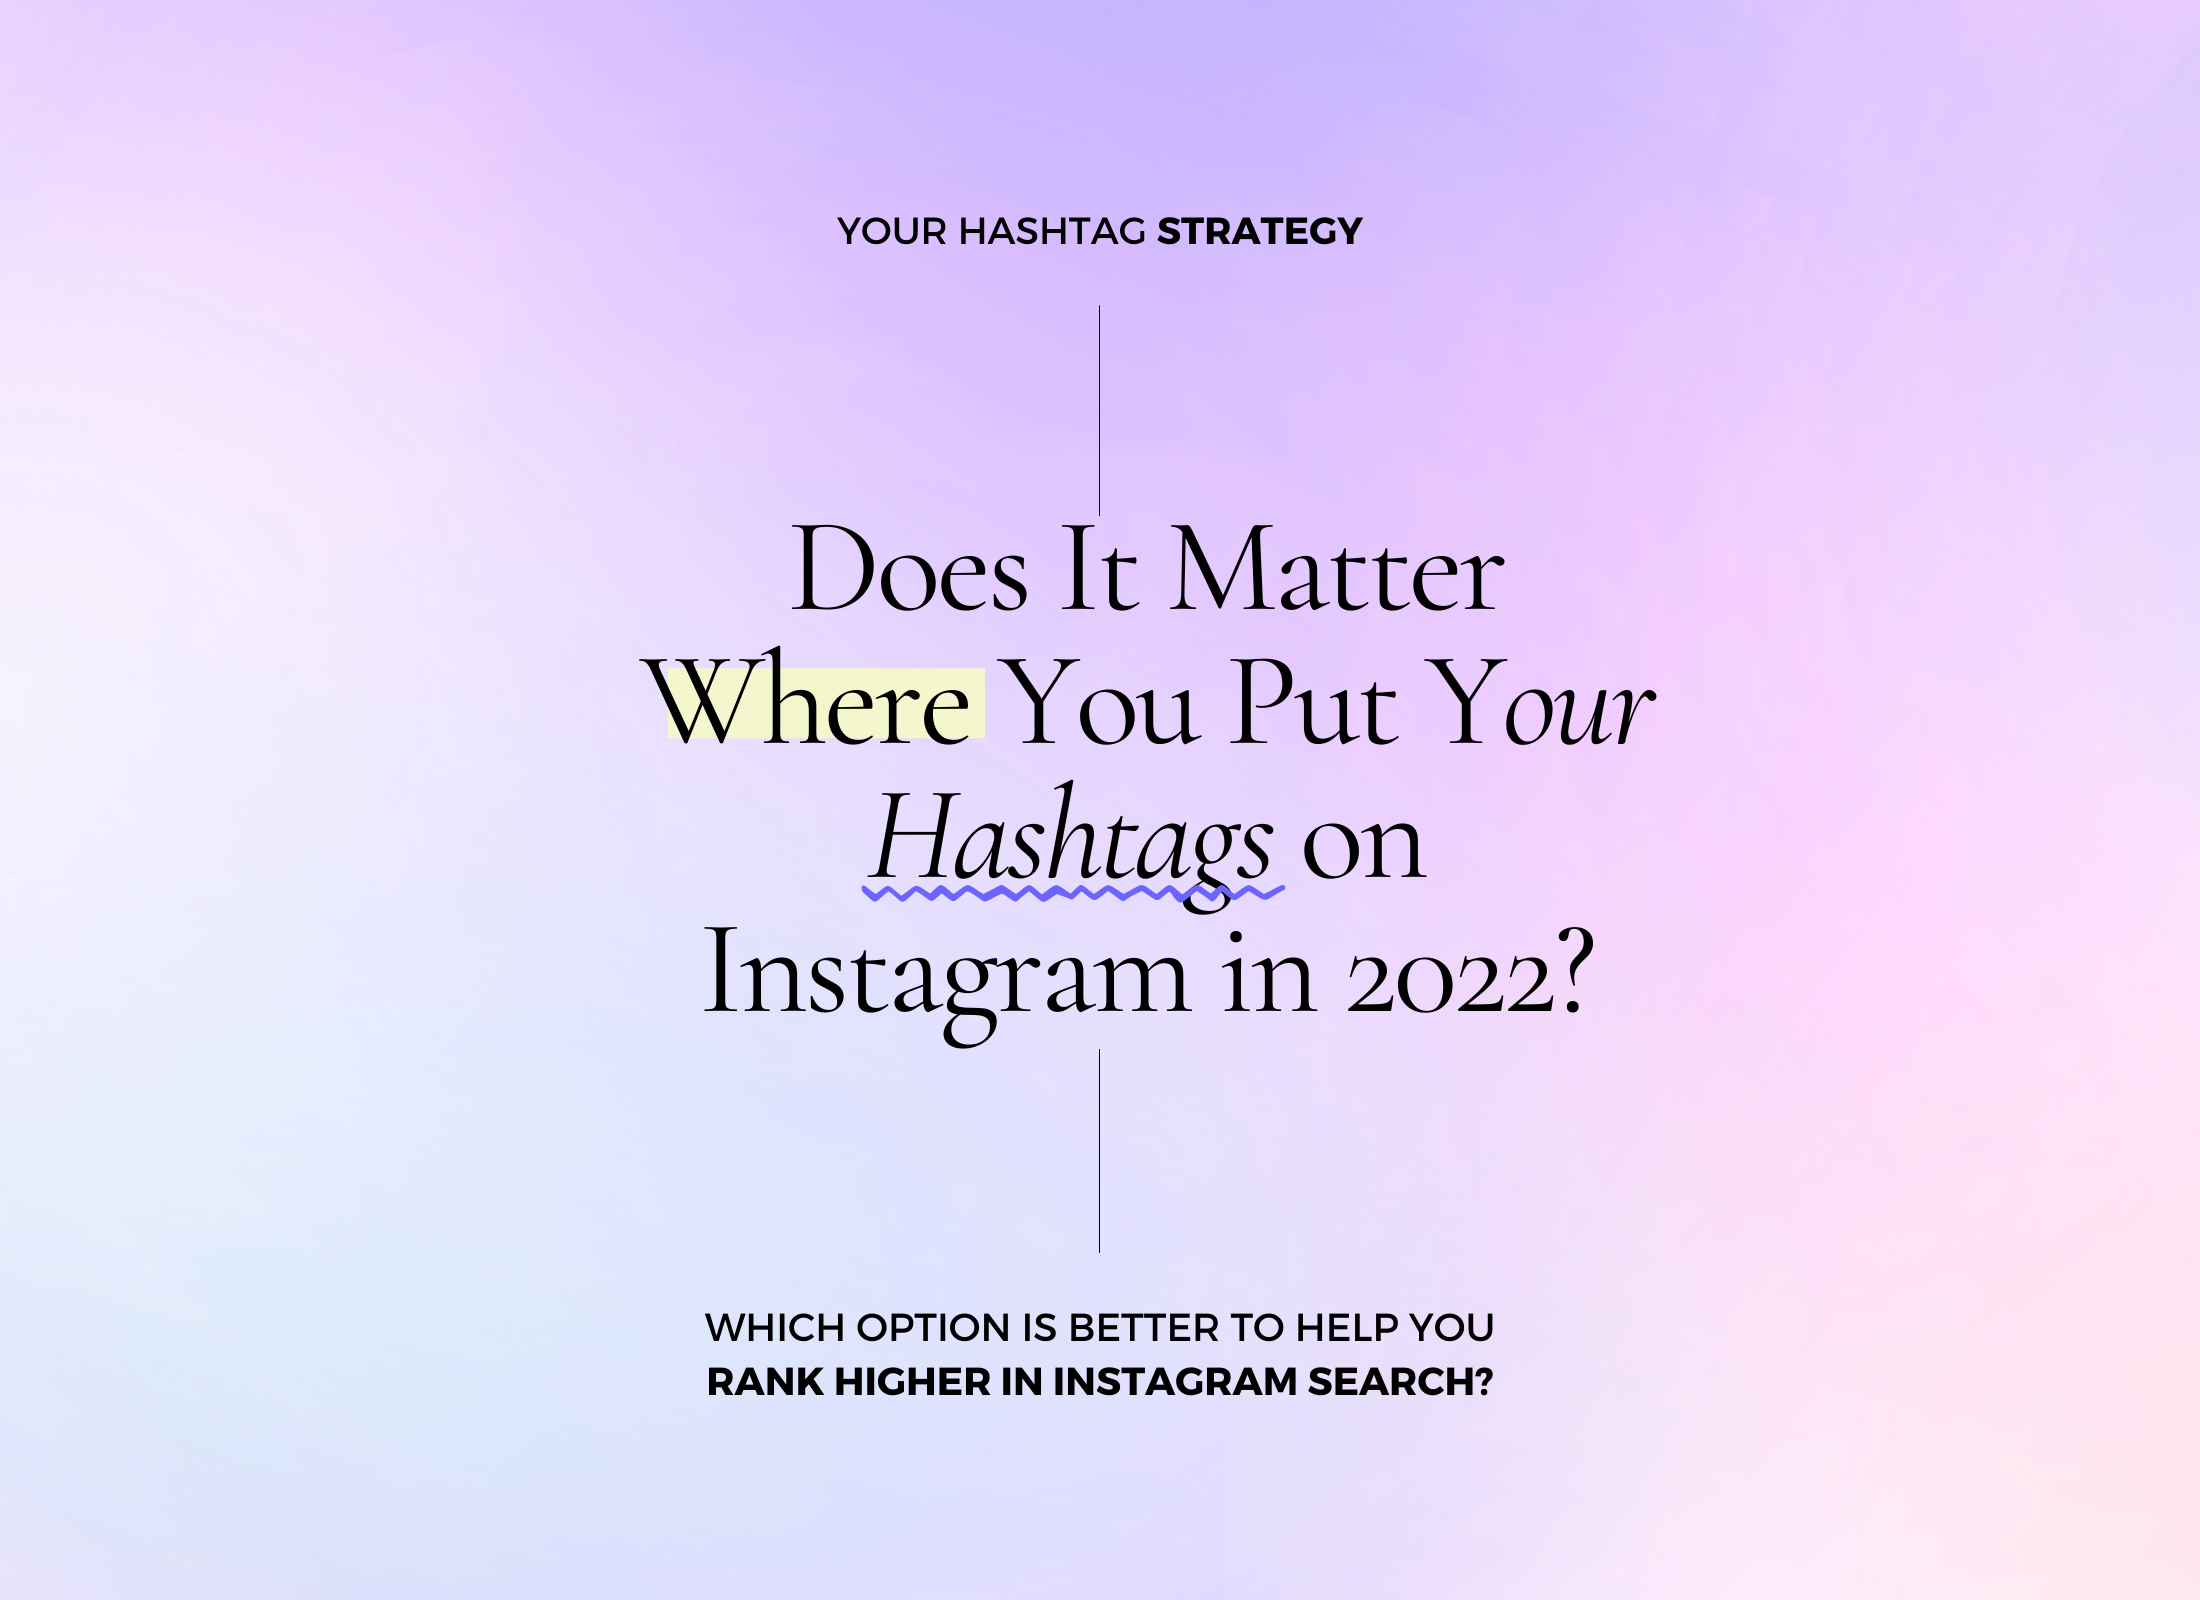 Đặt hashtag đúng cách sẽ giúp bài viết của bạn được nhiều người chú ý hơn. Hãy xem hình ảnh về đặt hashtag trên Instagram của chúng tôi để biết thêm các mẹo cải thiện tương tác cho bài viết của bạn.